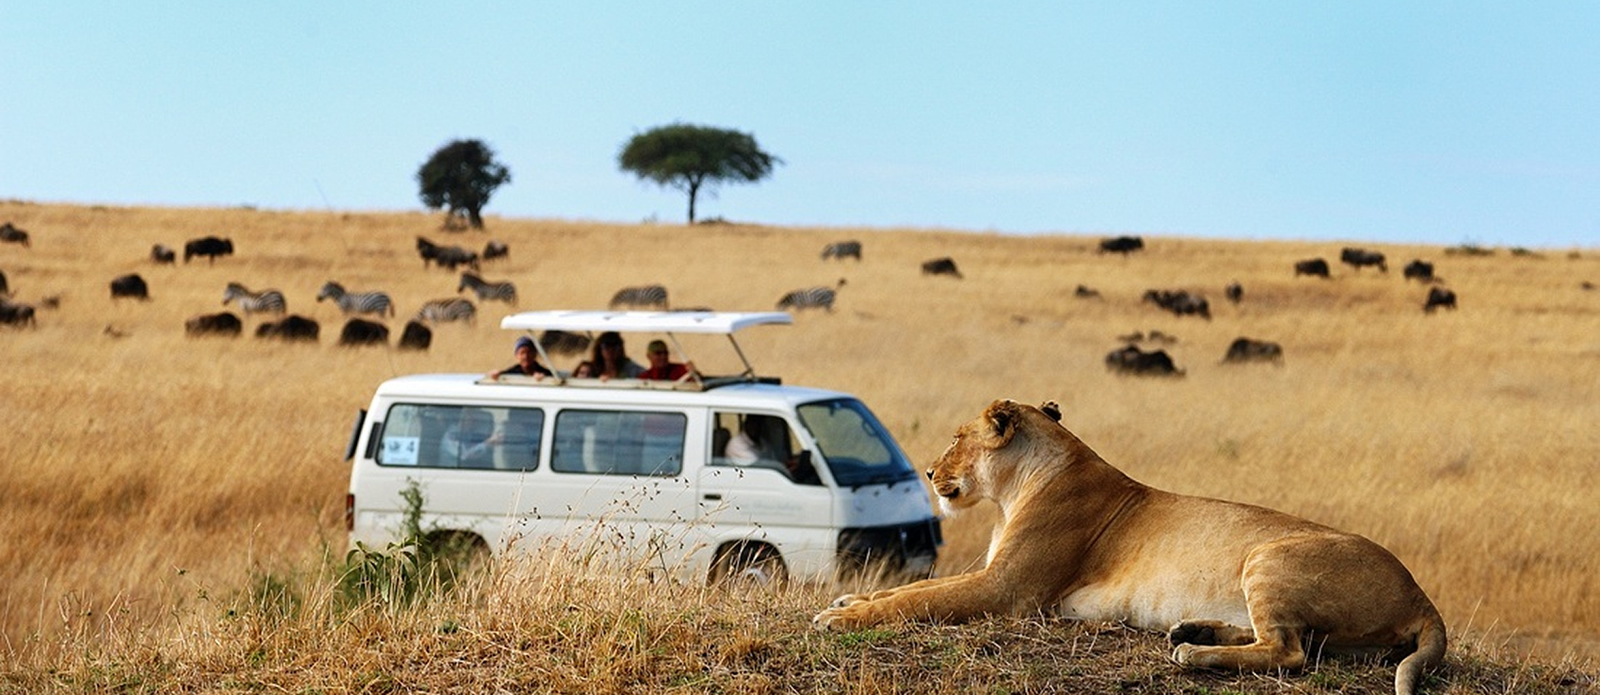 safari tour van